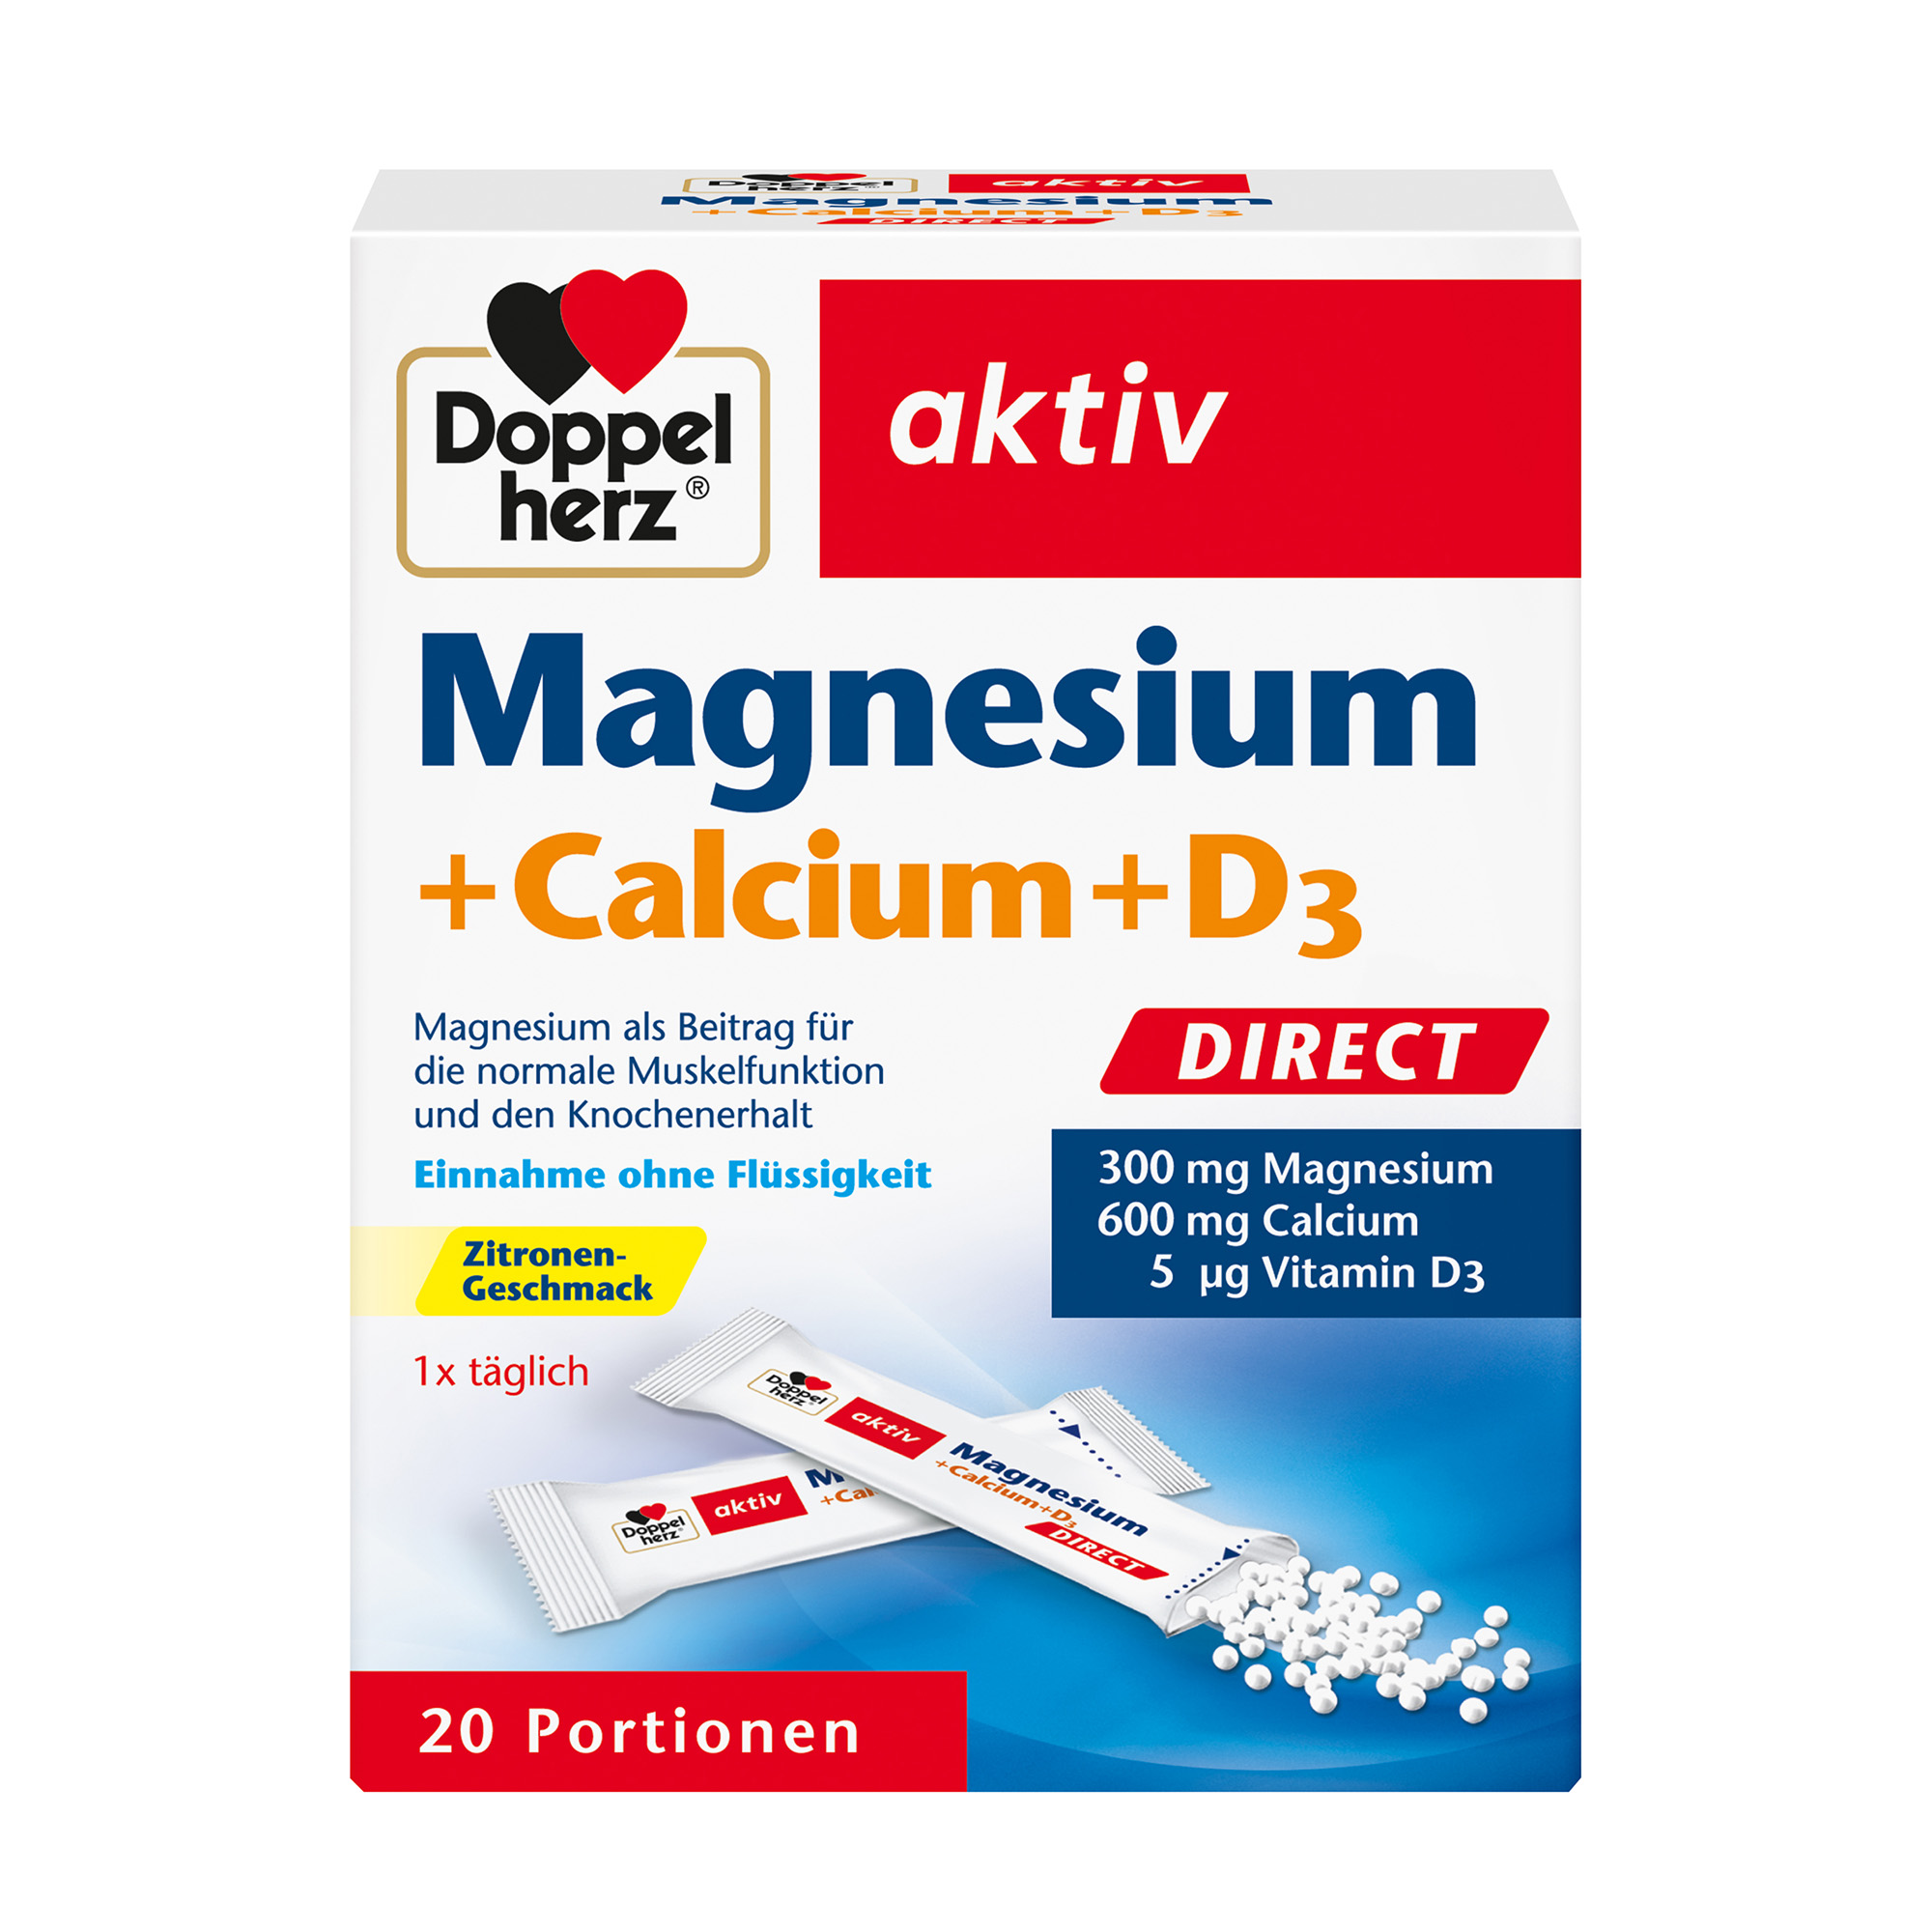 Doppelherz aktiv Magnesium + Calcium + Vitamin D3, 20 Portions